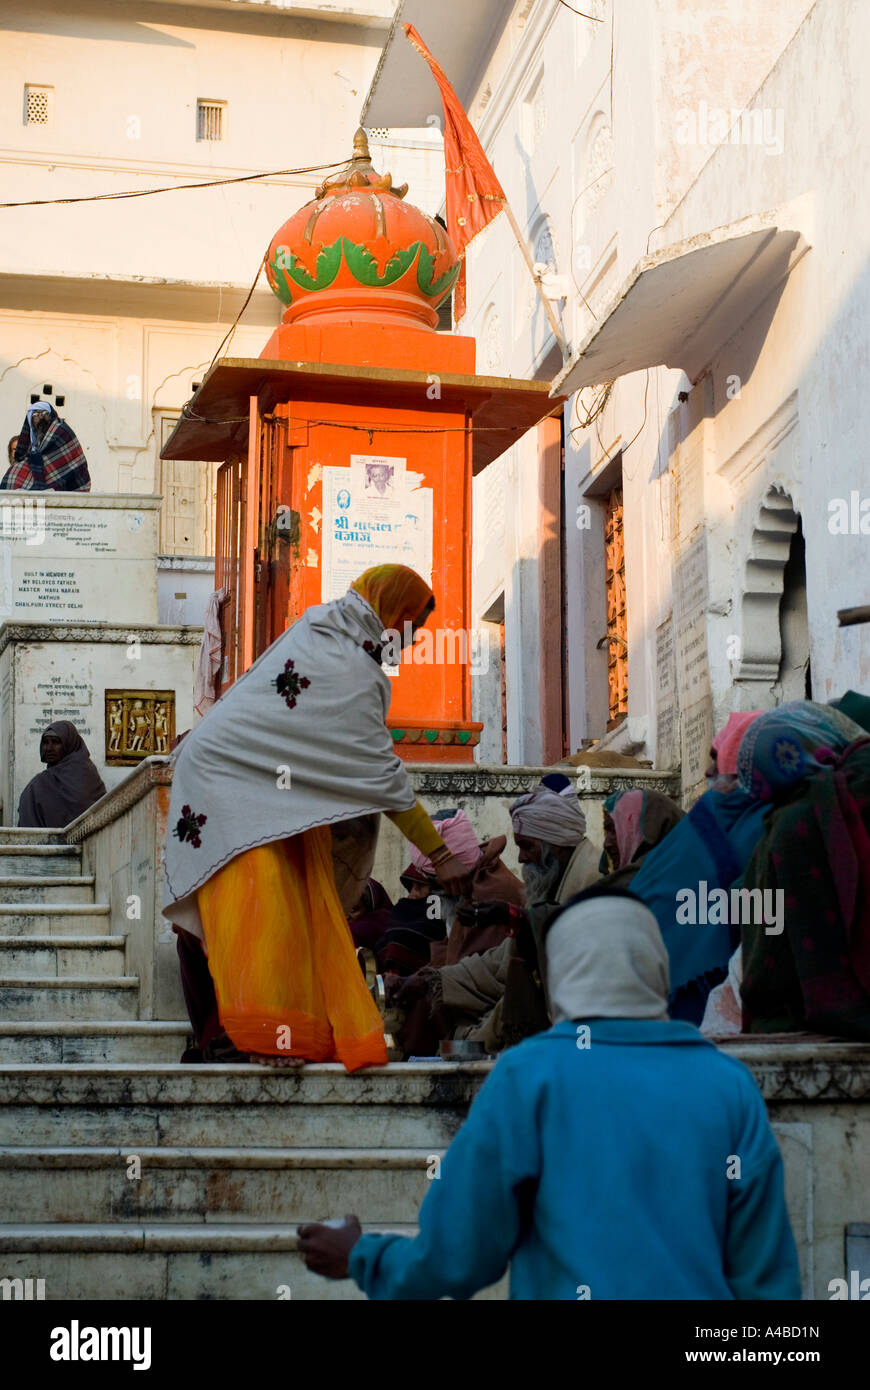 Imágenes de stock de una mujer india, una naranja en Sari, dar limosnas a los mendigos Foto de stock